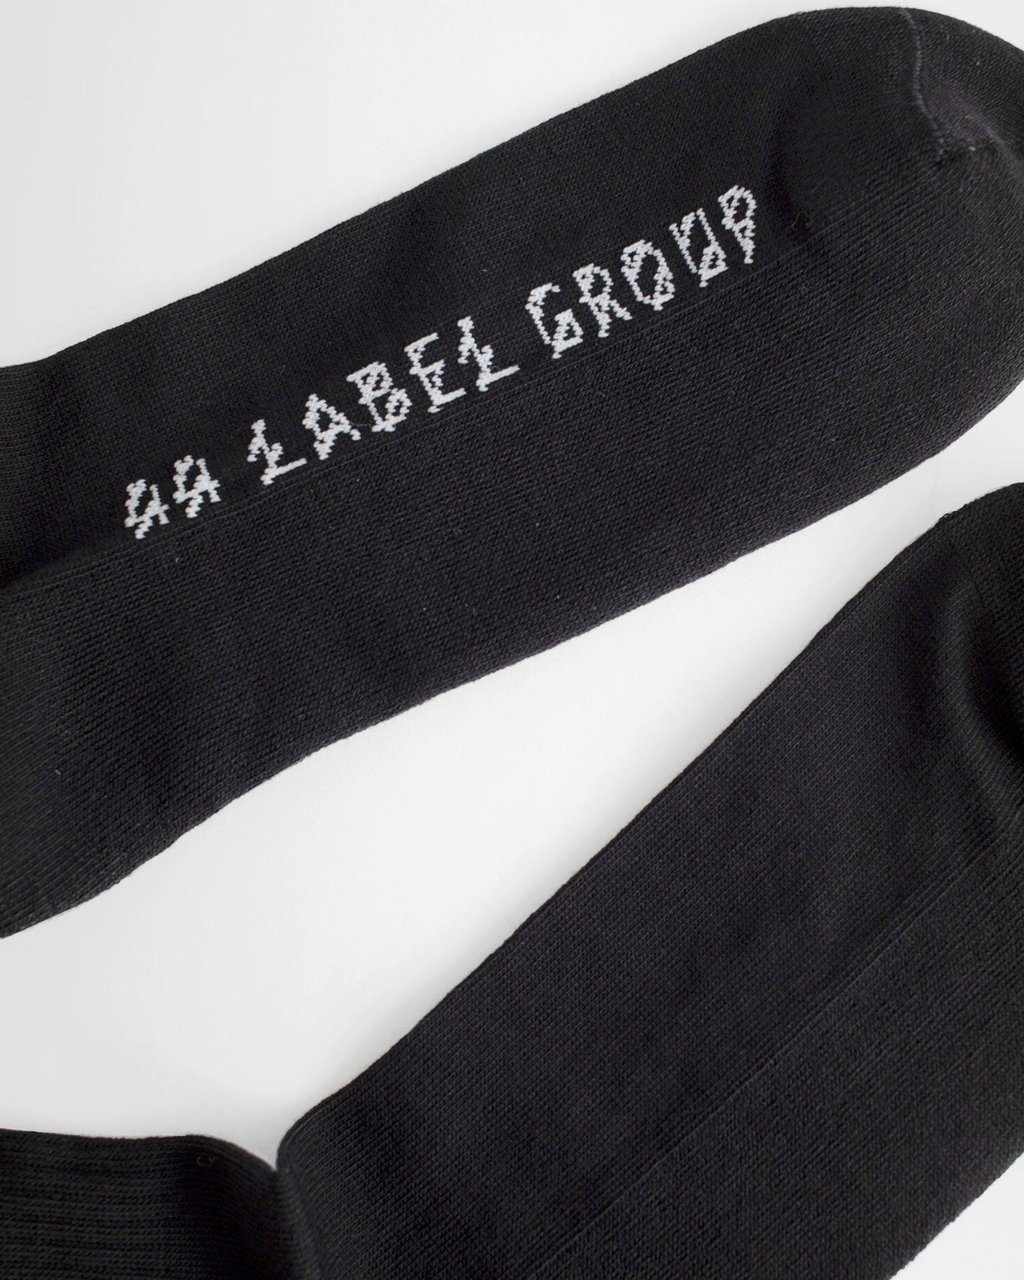 44 Label Group 44 Label Underwear Black Zwart